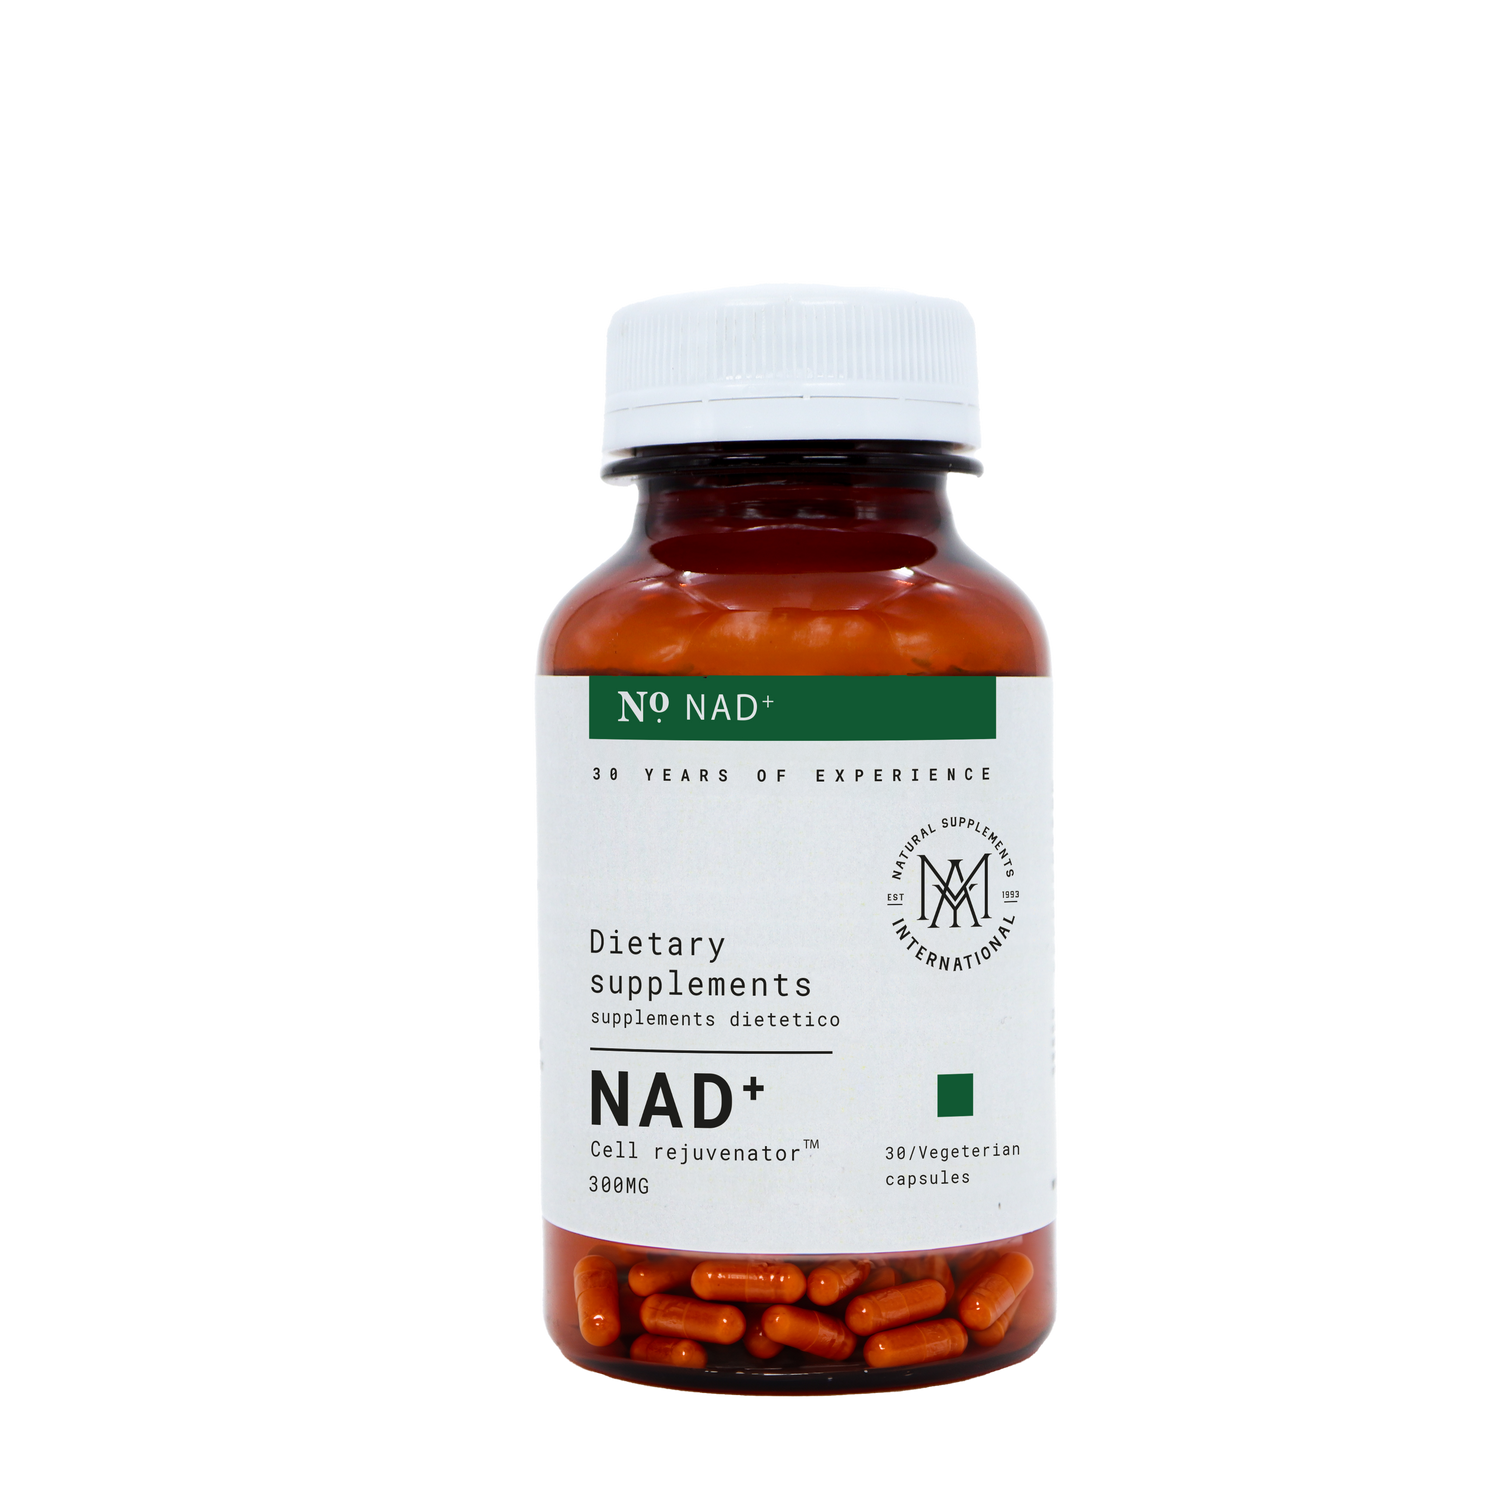 NAD+  Cell rejuvenator™